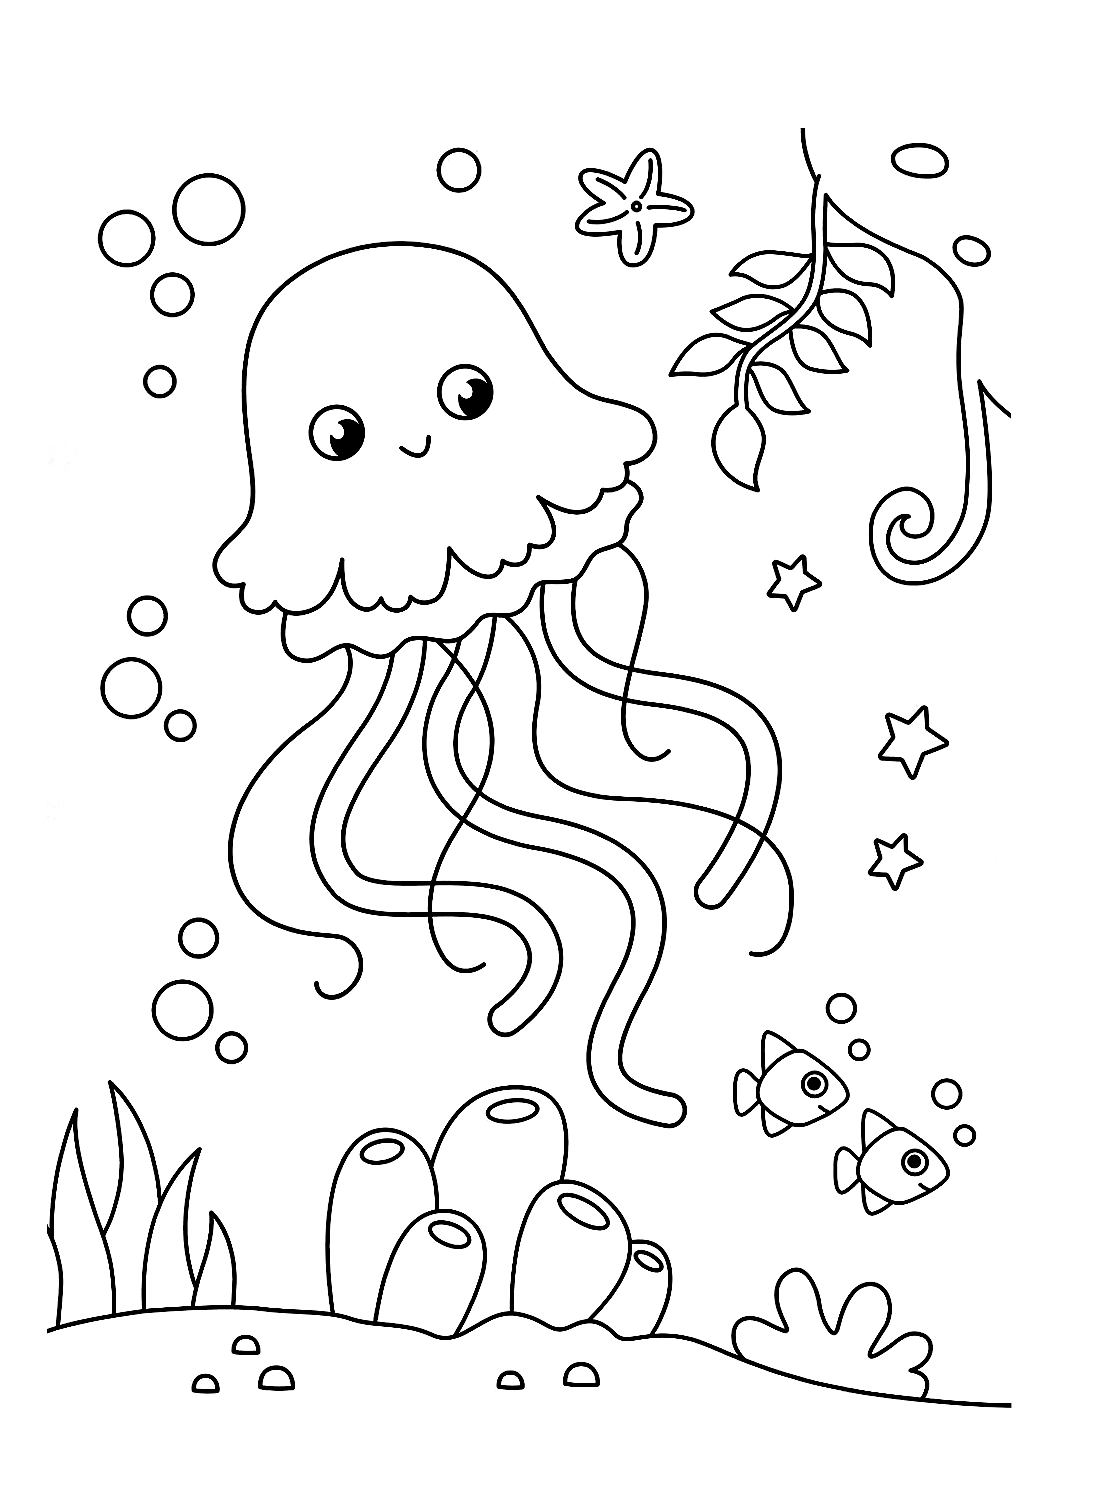 Una simpatica pagina da colorare di meduse